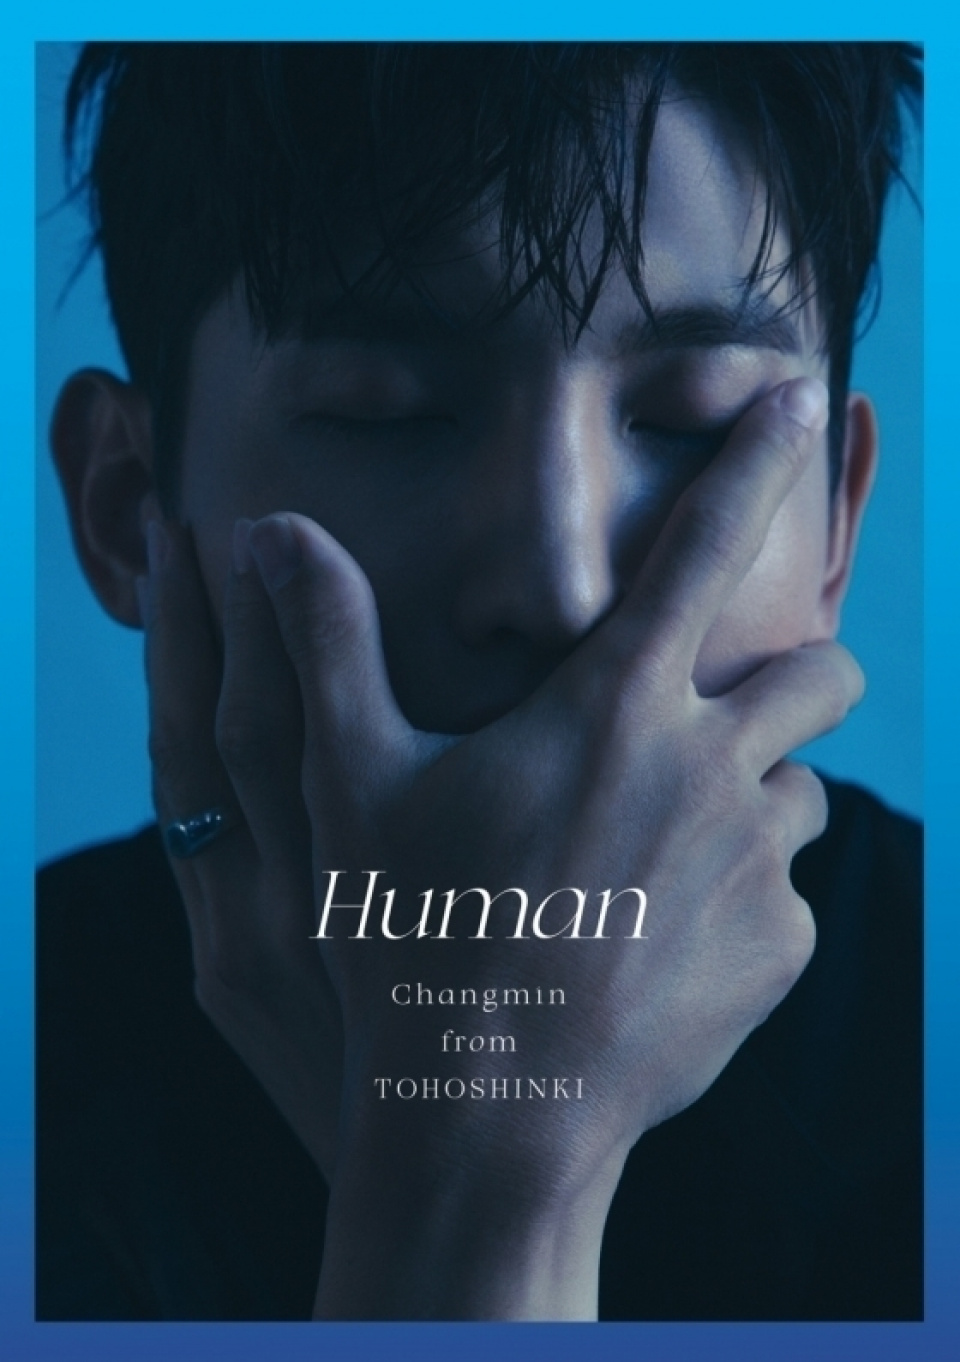  チャンミン、日本ソロアルバム『Human』8日公開へ